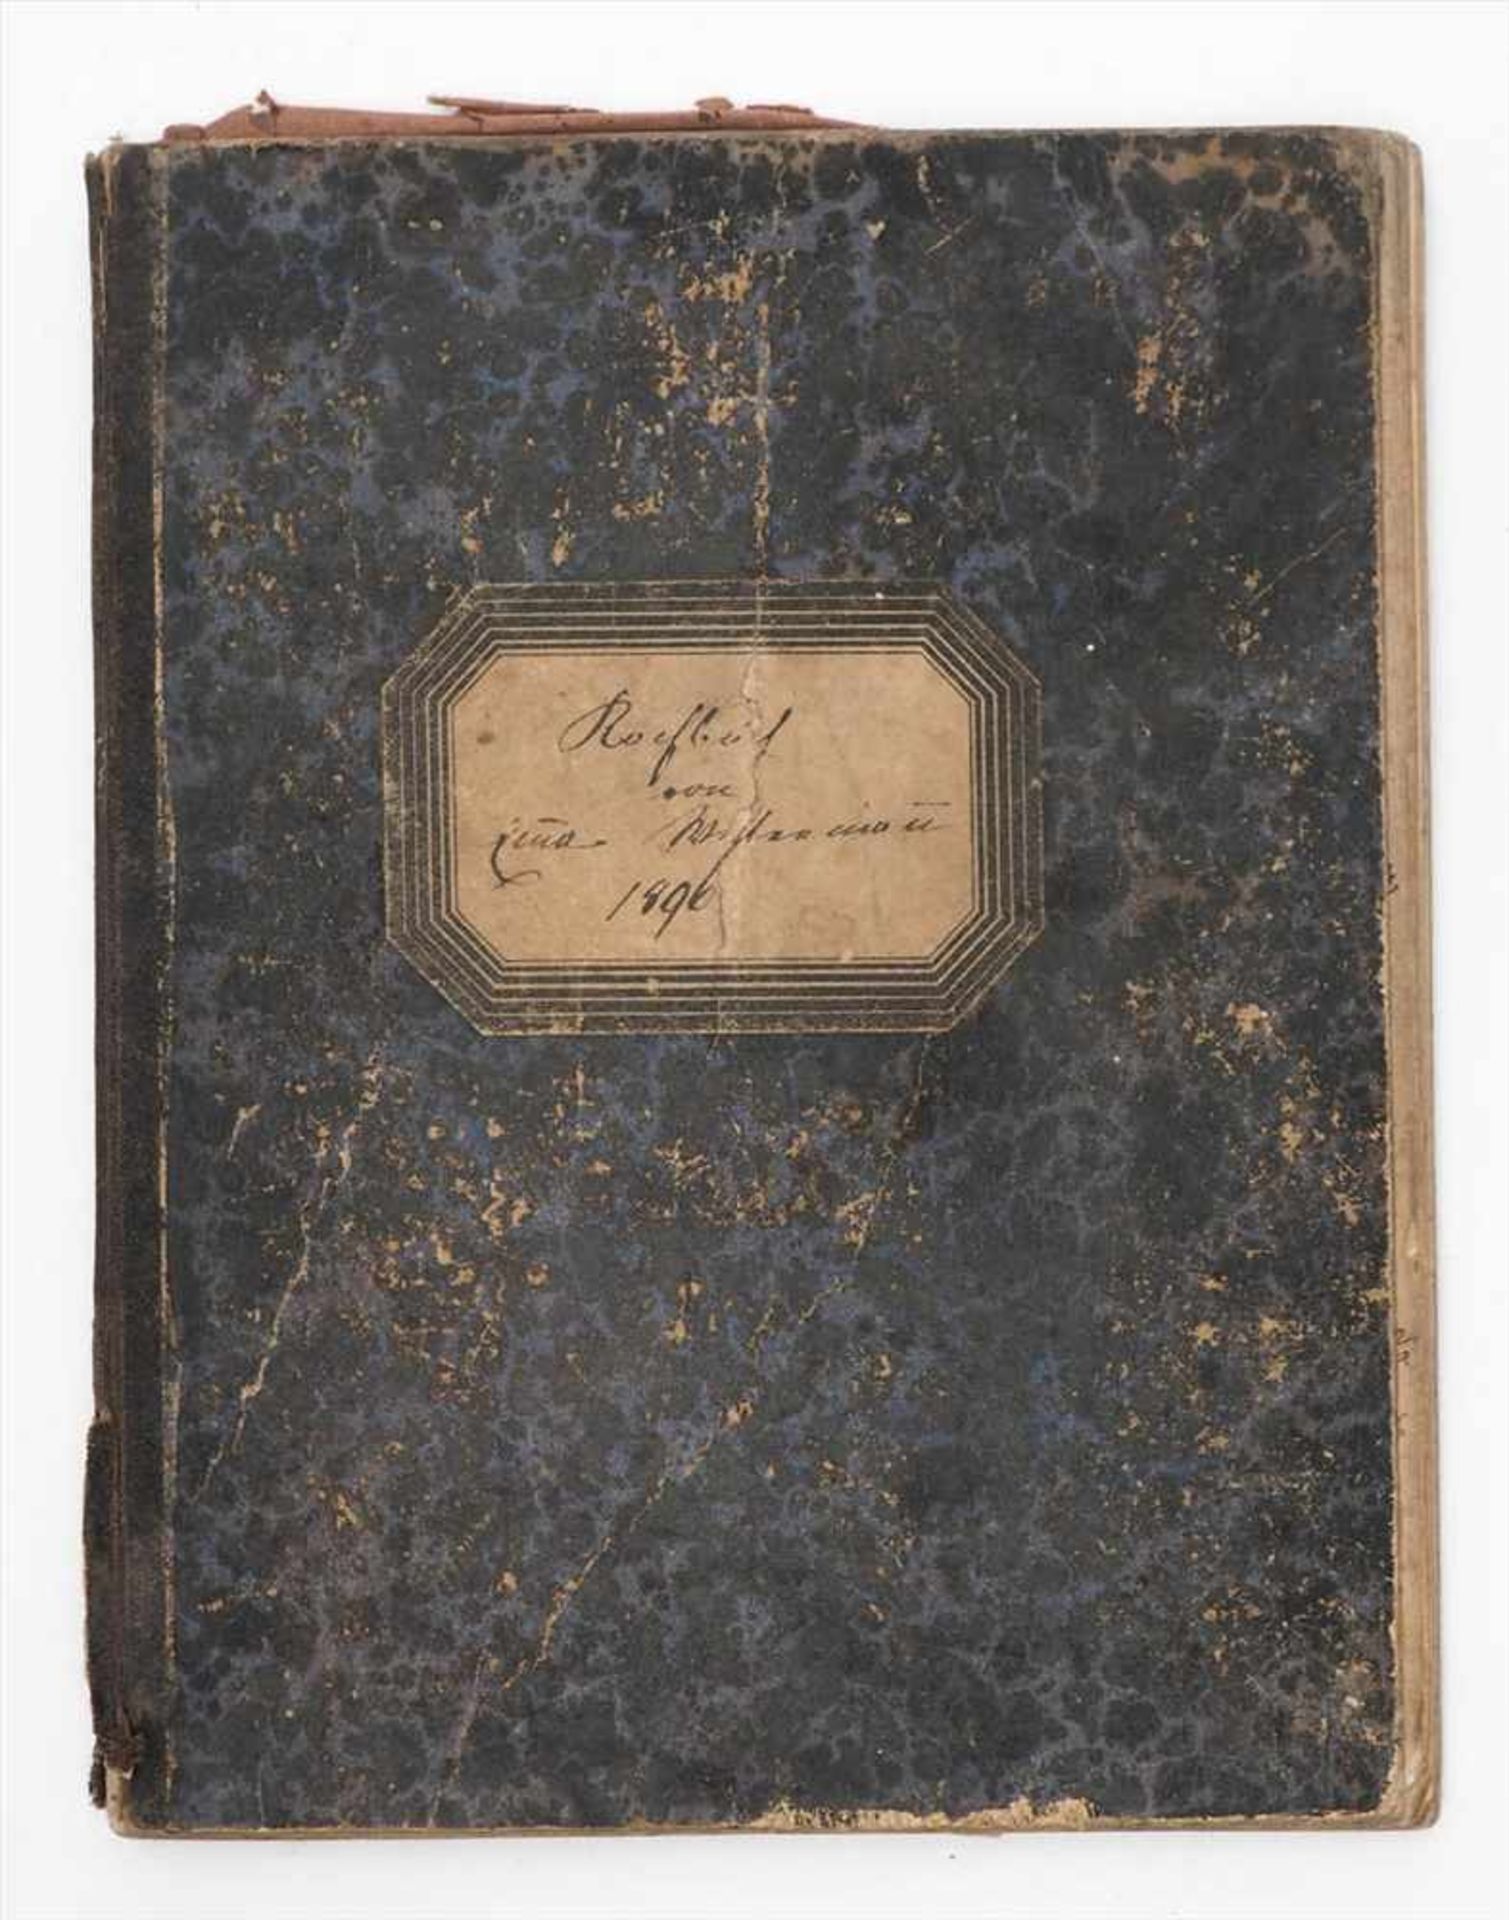 Kochbuch, dat. 1896Handschriftliche Einträge. Pappeinband. 20,5x16cm.